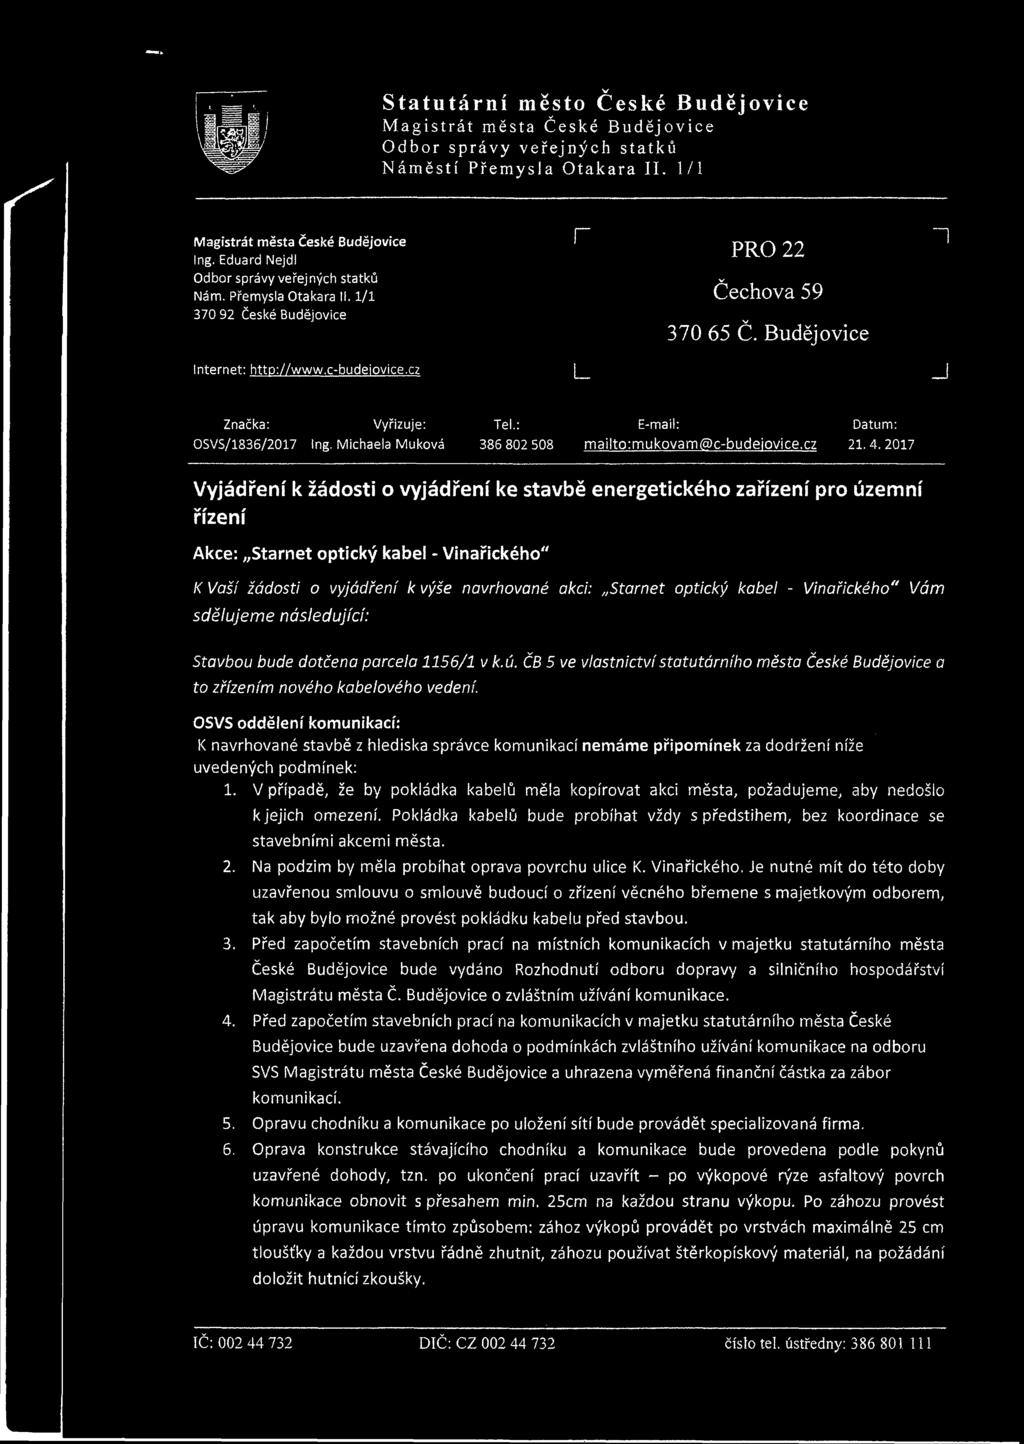 2017 Vyjádření k žádosti o vyjádření ke stavbě energetického zařízení pro územní řízení Akce: Starnet optický kabel - Vinařického" K Vaší žádosti o vyjádření k výše navrhované akci: Starnet optický